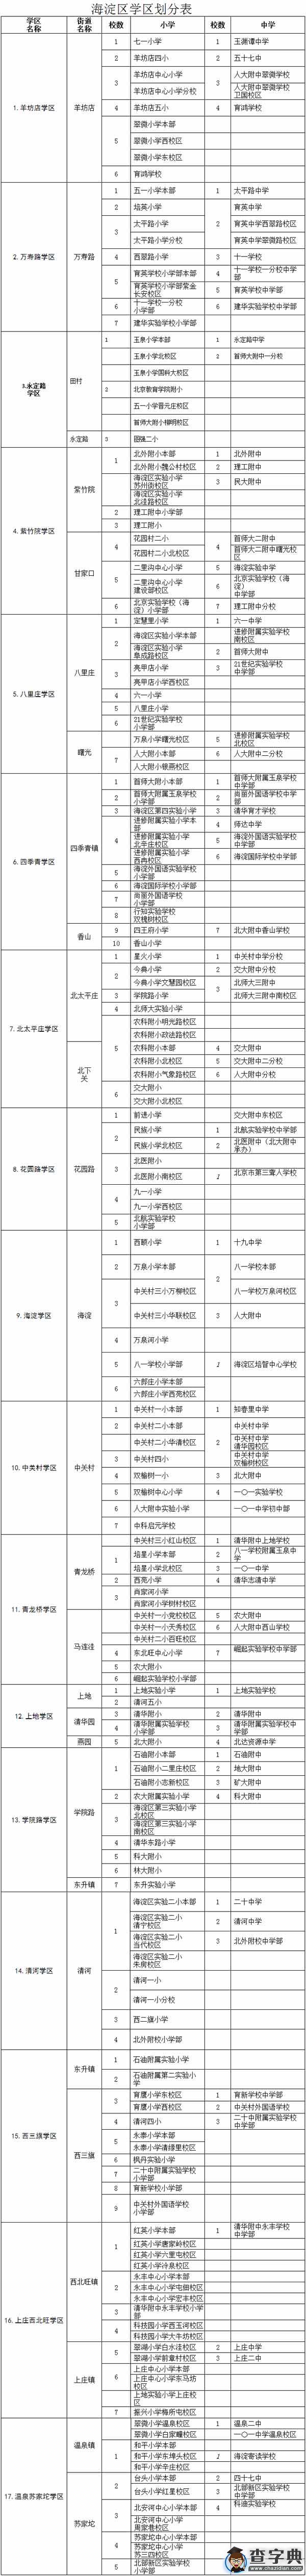 一表查询北京海淀17个学区划分 小升初不“锁区”1